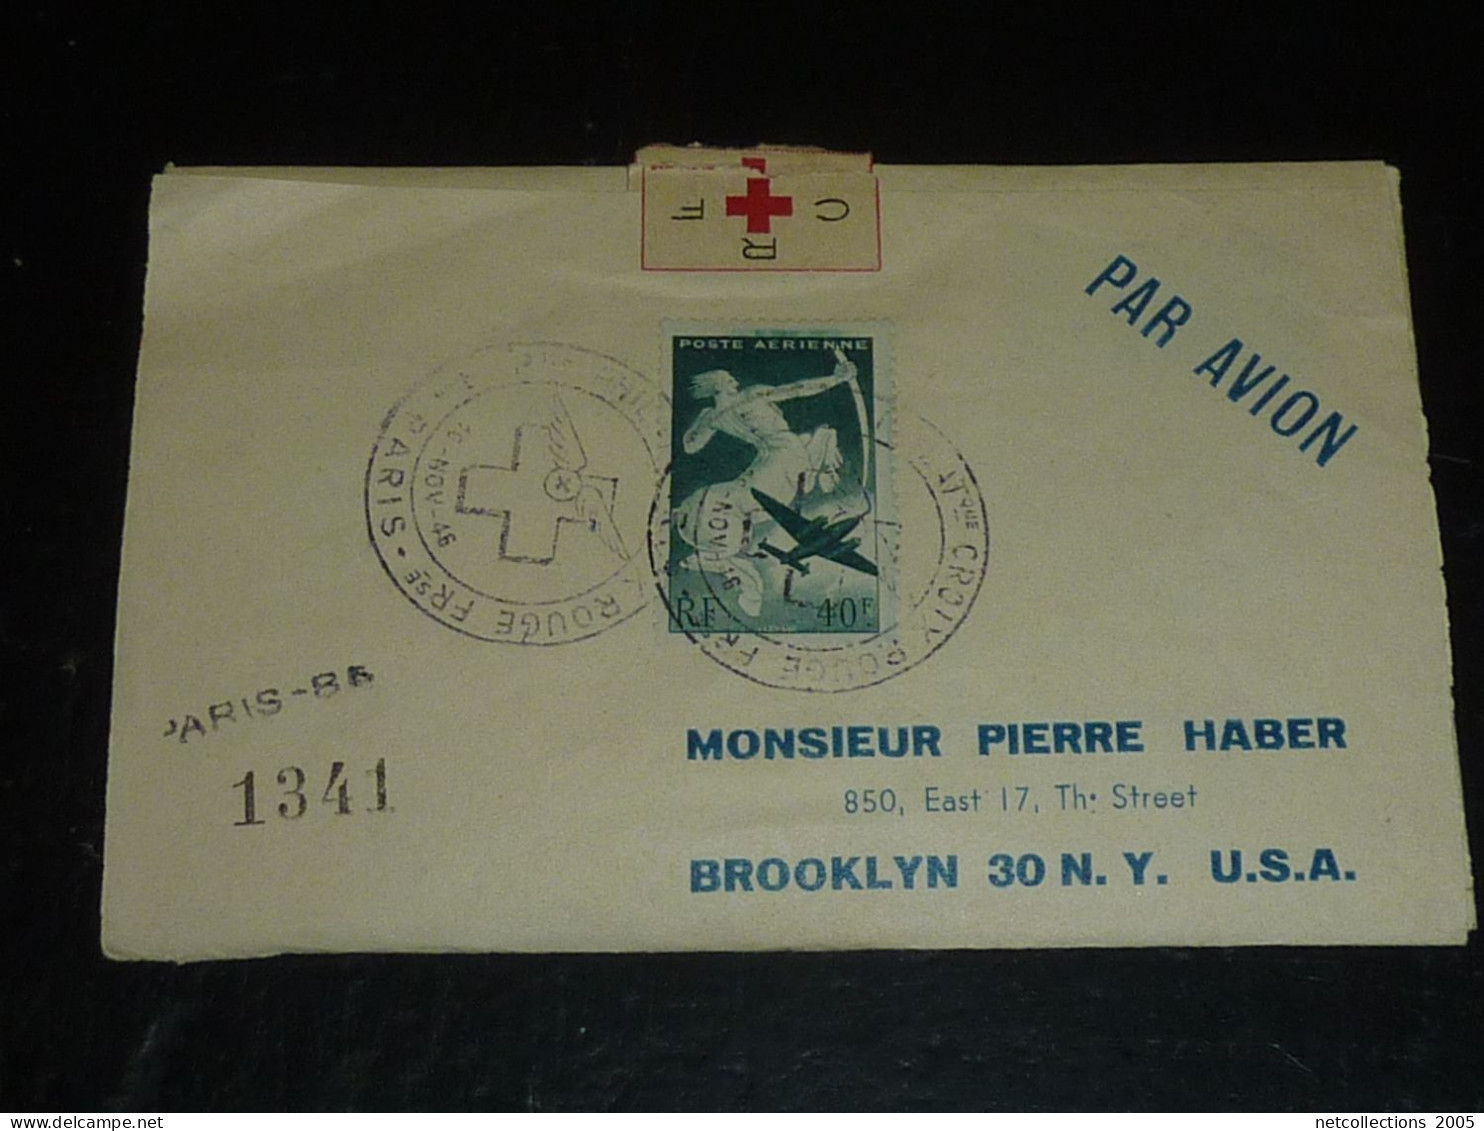 TOUR DU MONDE; CROIX ROUGE - PARIS NEW-YORK 18/11/1946 AU 21/11/1946 - NEW-YORK BRUXELLES - BRUXELLES PARIS ARRIVEE (CB) - Rotes Kreuz